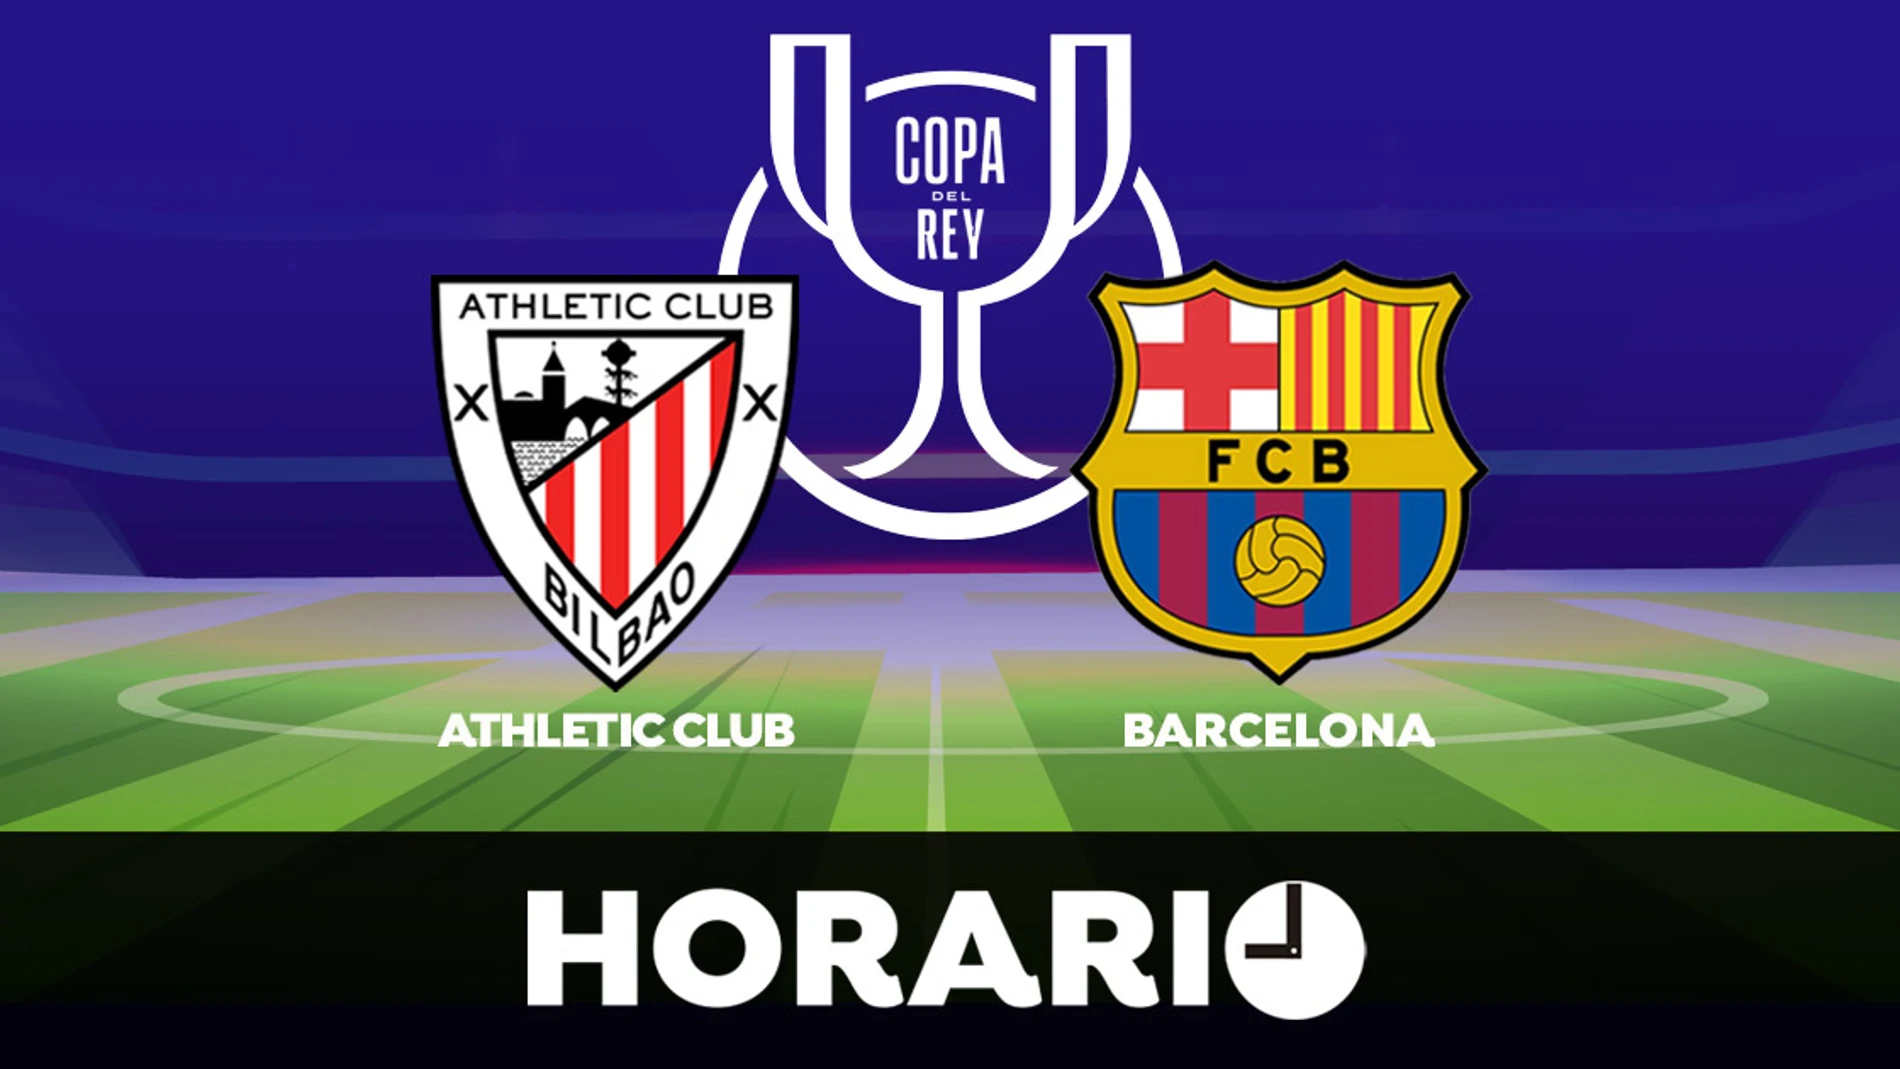 Athletic Club - Barcelona: Horario, alineaciones y dónde ver la final de la Copa del Rey en directo